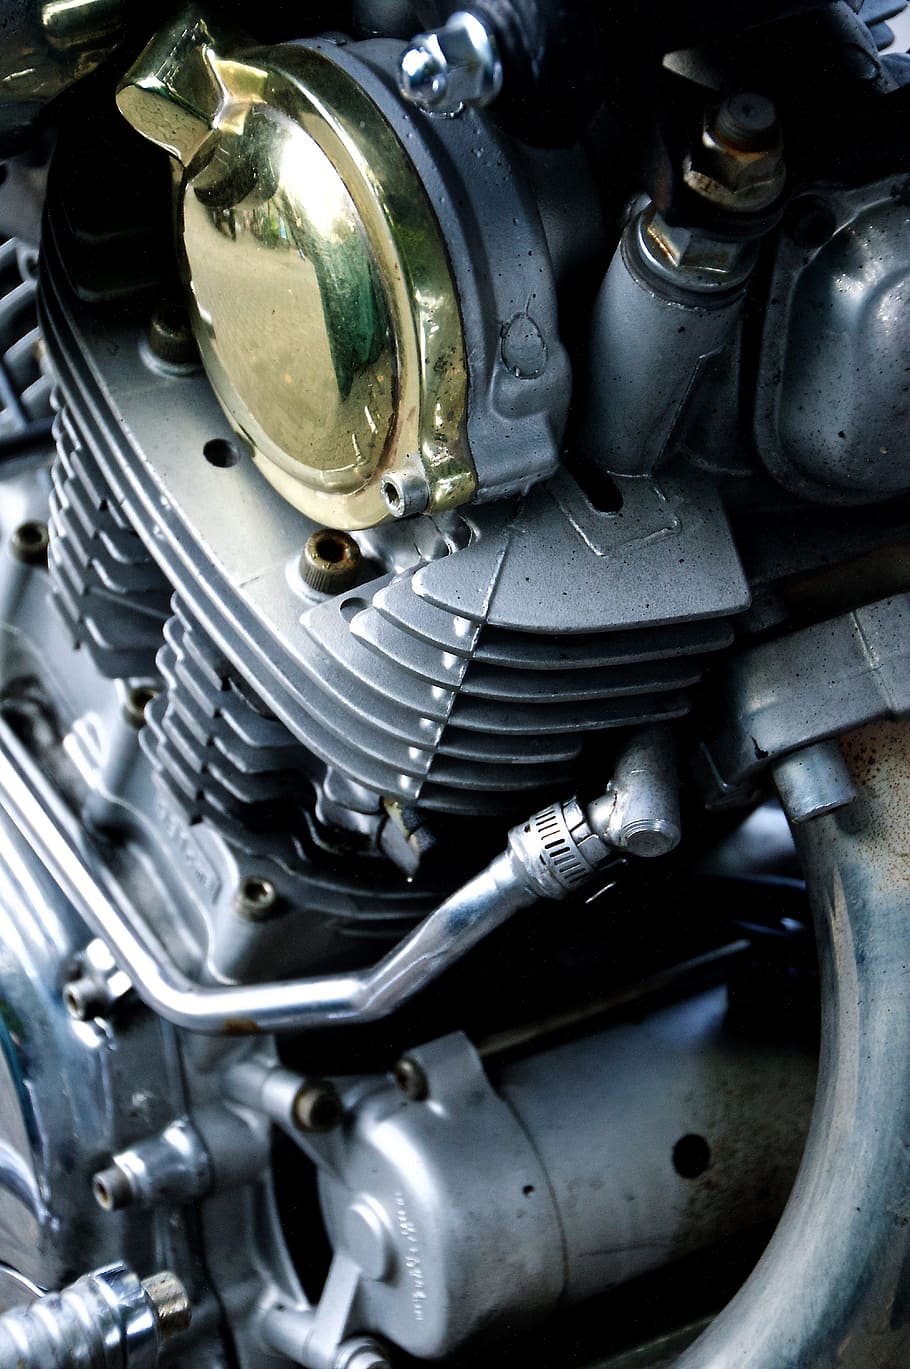 Motor de motocicleta gris, Yamaha, motocicleta, detalles, tecnología, cromo, metalizado, metal, bicicletas, oldtimer